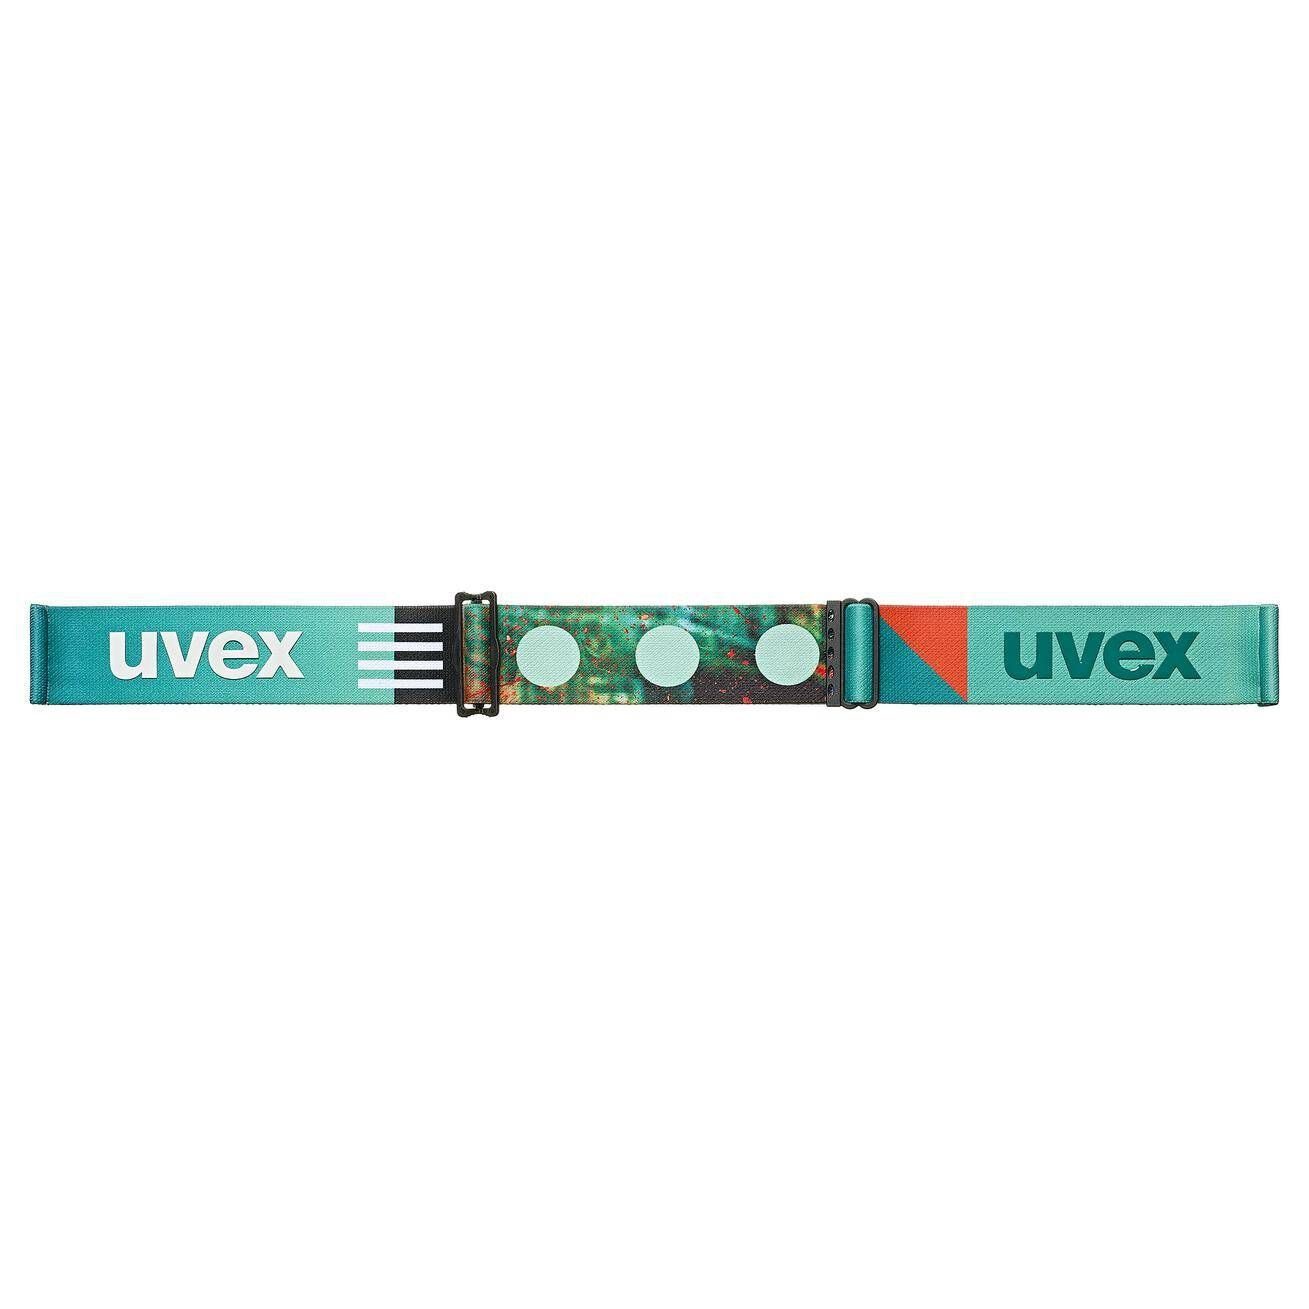 CV Uvex Skibrille weiß DOWNHILL Skibrille 2100 (100)